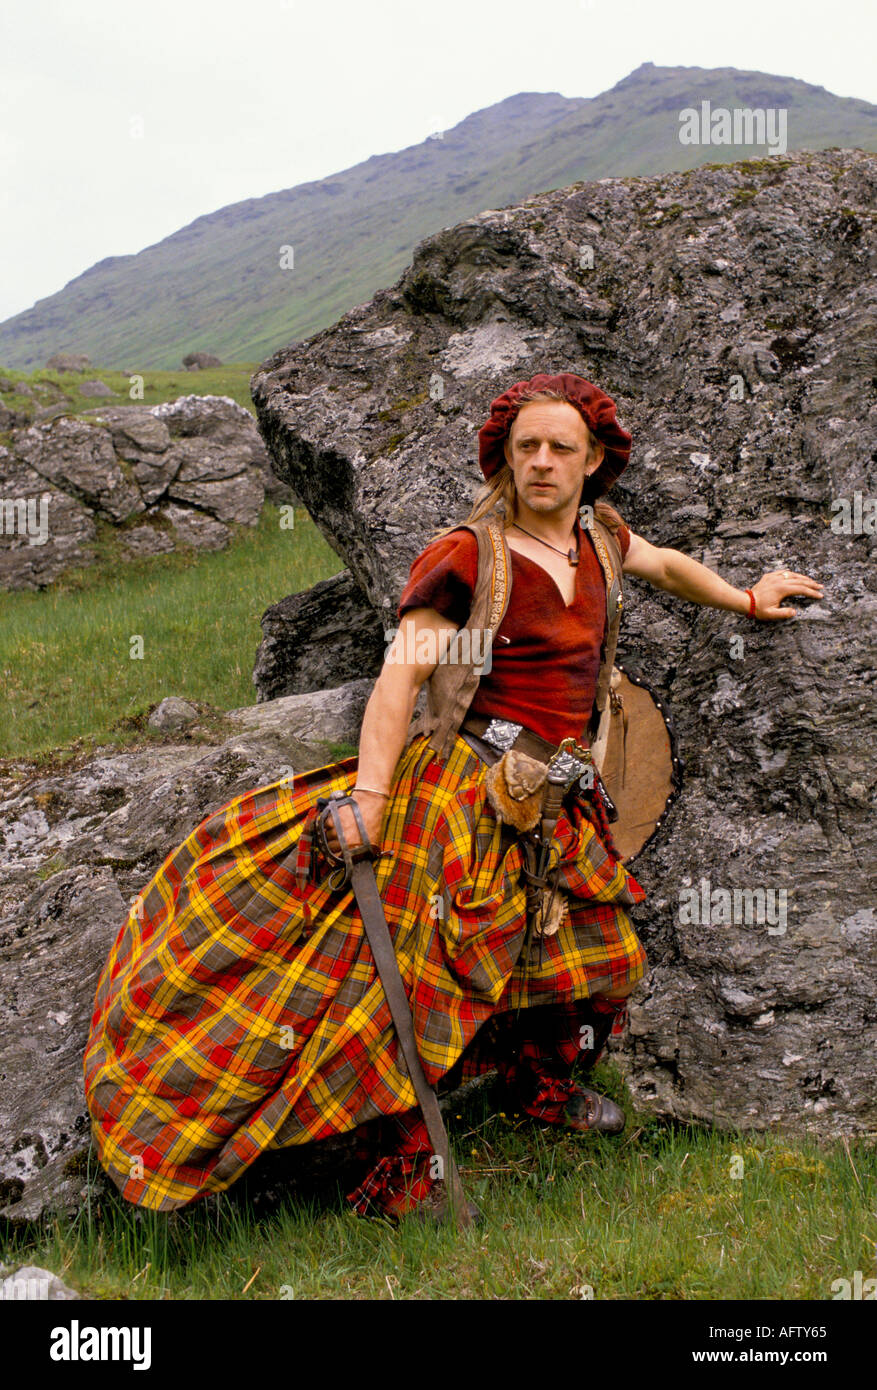 Le Clan une robe de groupe écossaise de reconstitution pour la bataille de Culloden un long traditionnel. Glen Croe Écosse années 1990 Royaume-Uni HOMER SYKES Banque D'Images